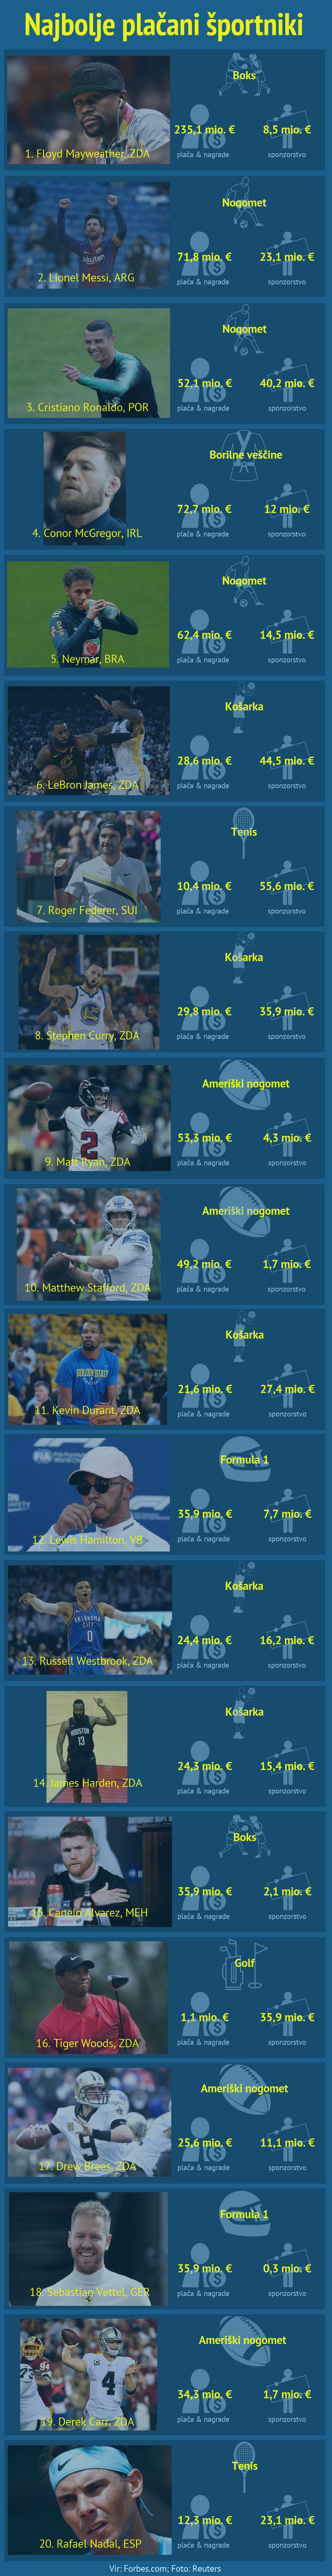 Najbolje plačani športniki 2018 | Foto: Infografika: Marjan Žlogar